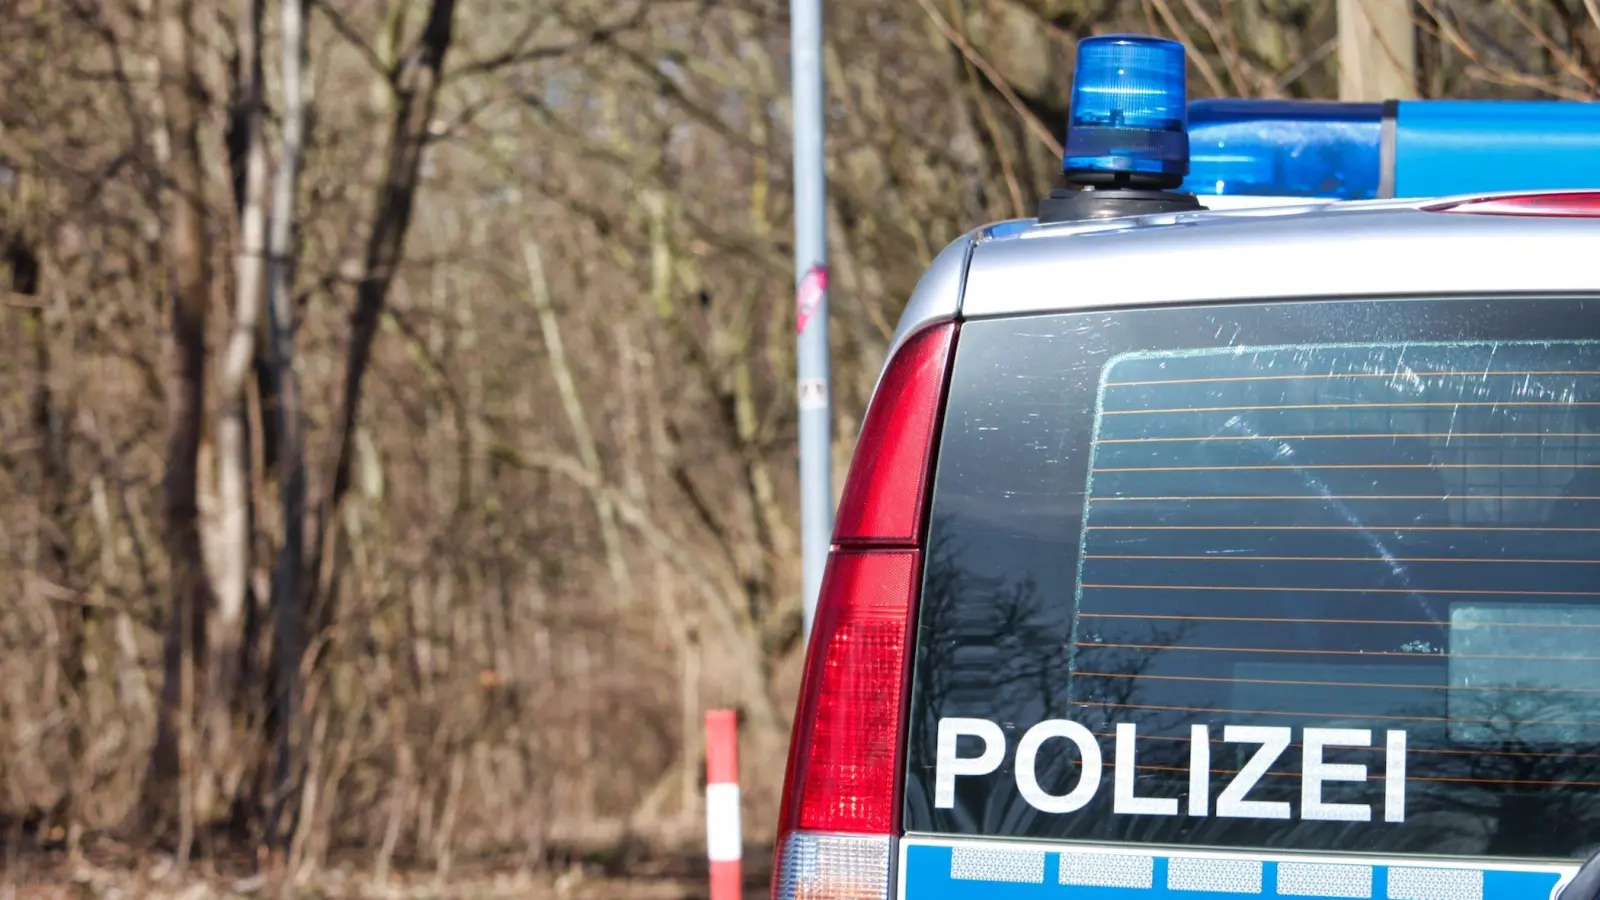 Polizei sucht in Taucha nach vermisster Frau / Update: Die Frau wurde gefunden (Foto: taucha-kompakt.de)